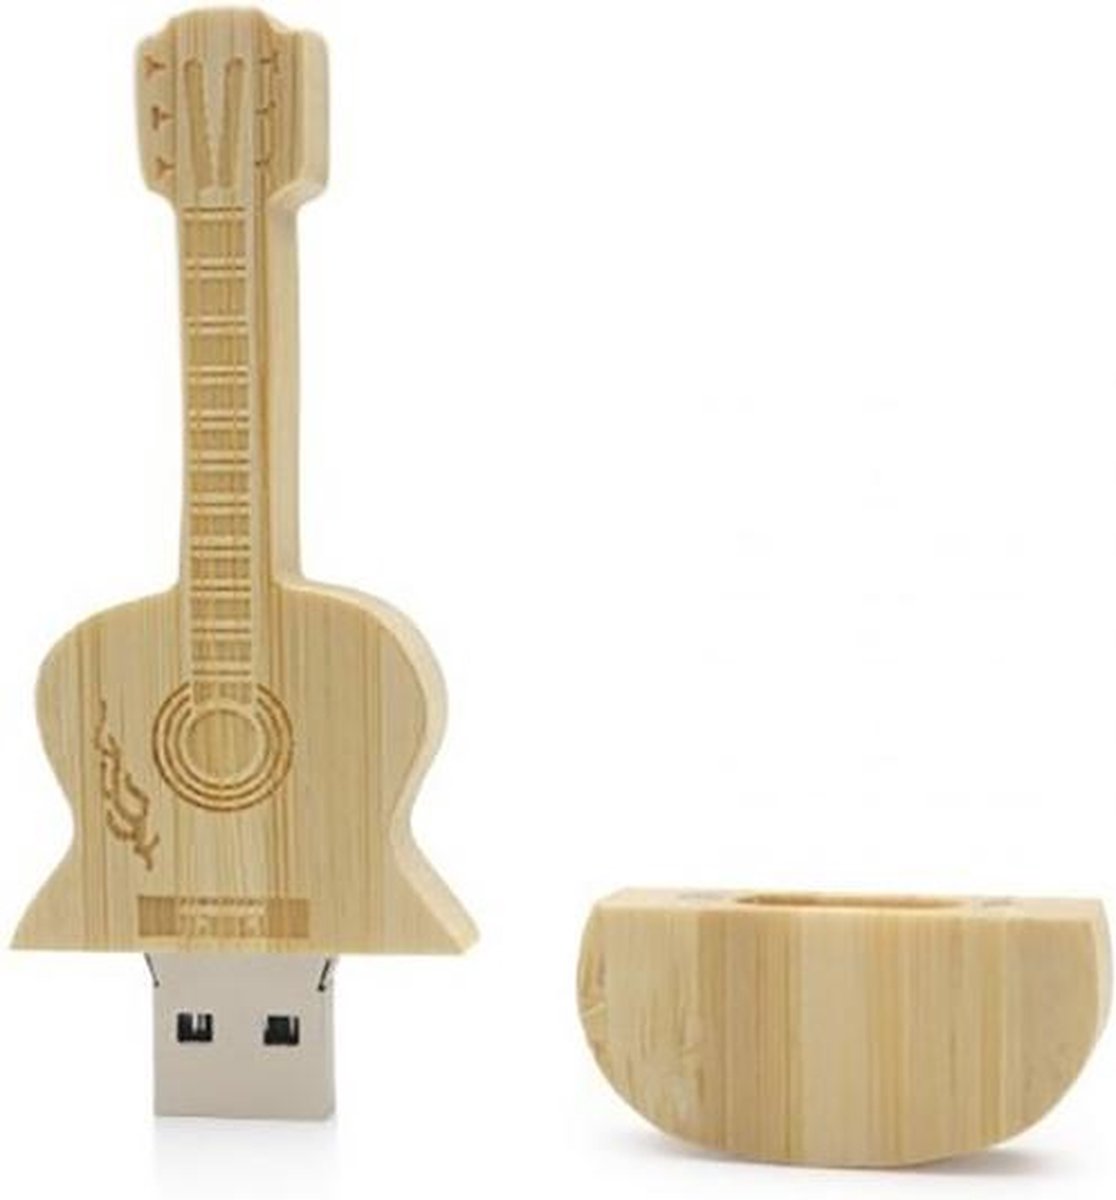 Porté-clé guitare en bois clé USB: 6 capacités, de 4 à 128 Go